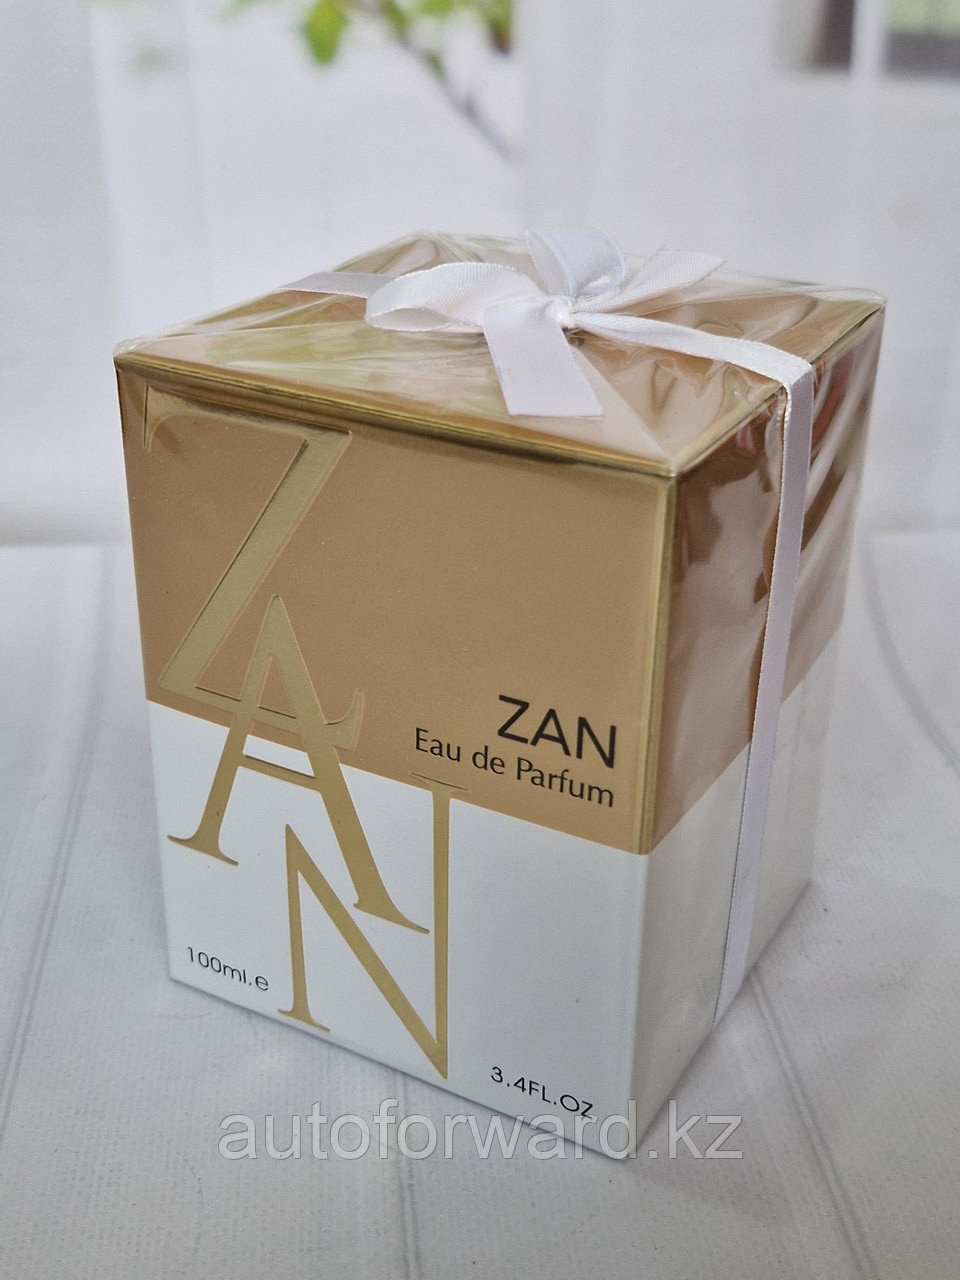 ОАЭ Парфюм Zan (Shiseido Zen), 100 мл